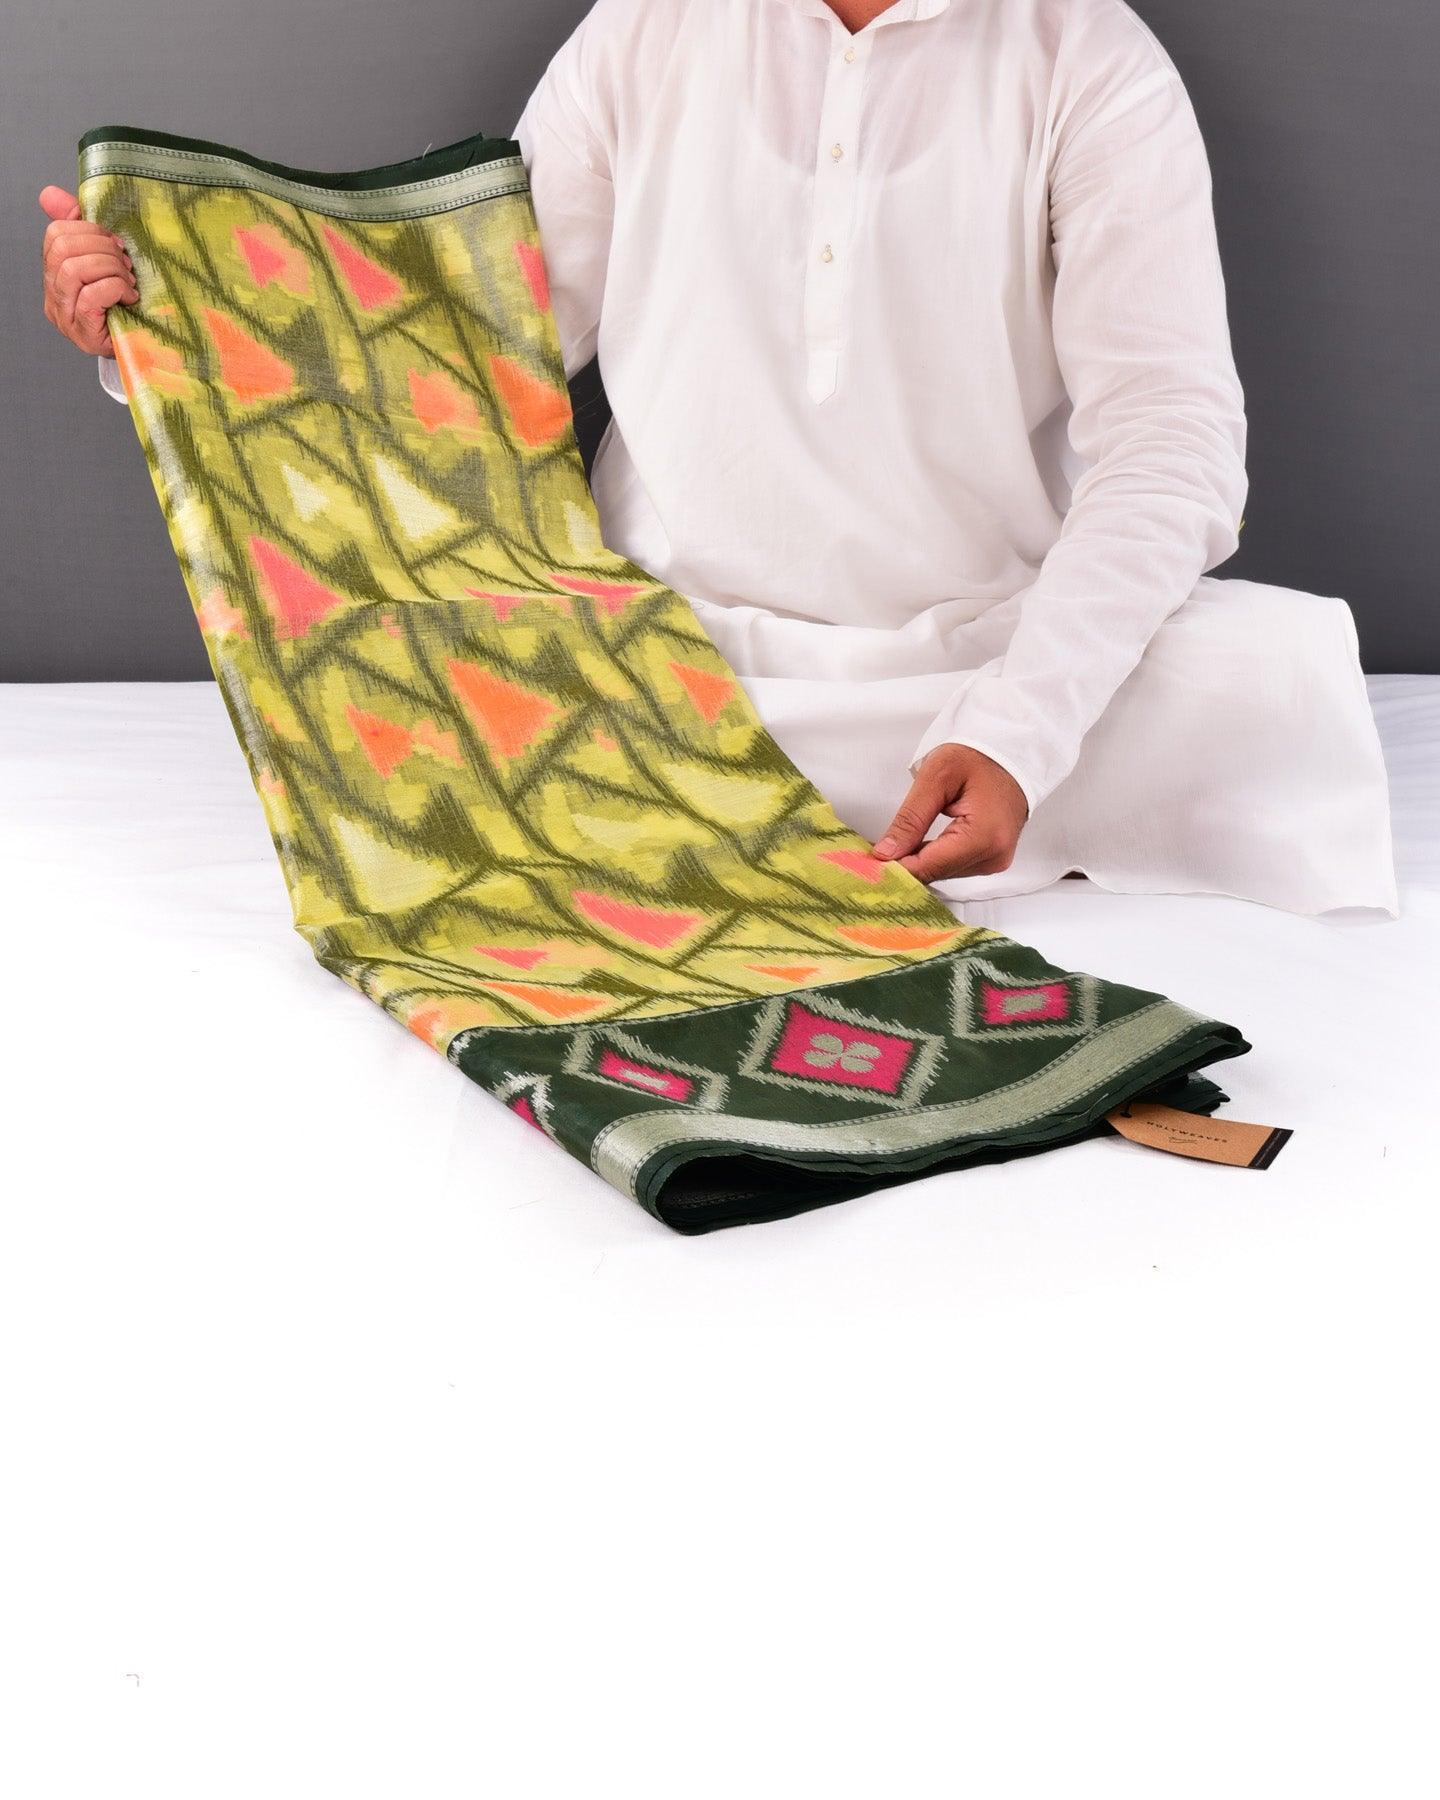 Metallic Green Banarasi Arrowhead Buta Cutwork Brocade Woven Poly Tissue Saree - By HolyWeaves, Benares